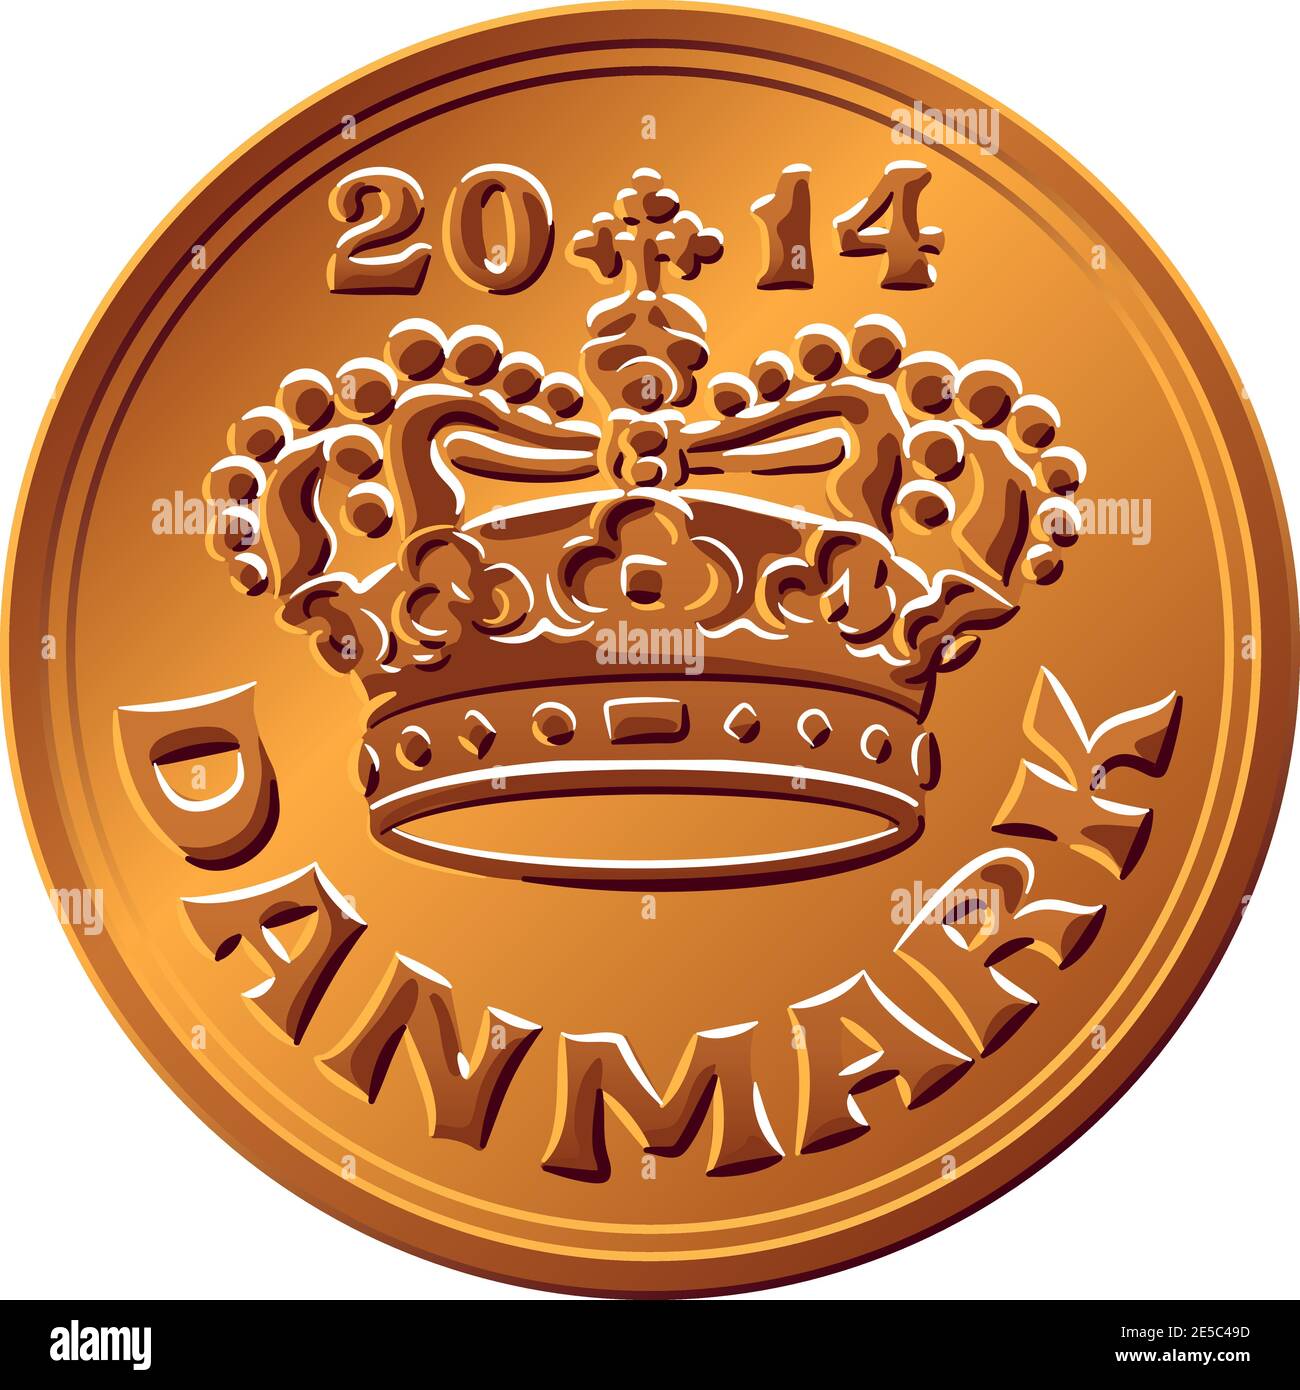 Moneta danese in stagno-bronzo 50 ore. Krone, valuta ufficiale della Danimarca, della Groenlandia e delle Isole Faroe. Illustrazione Vettoriale